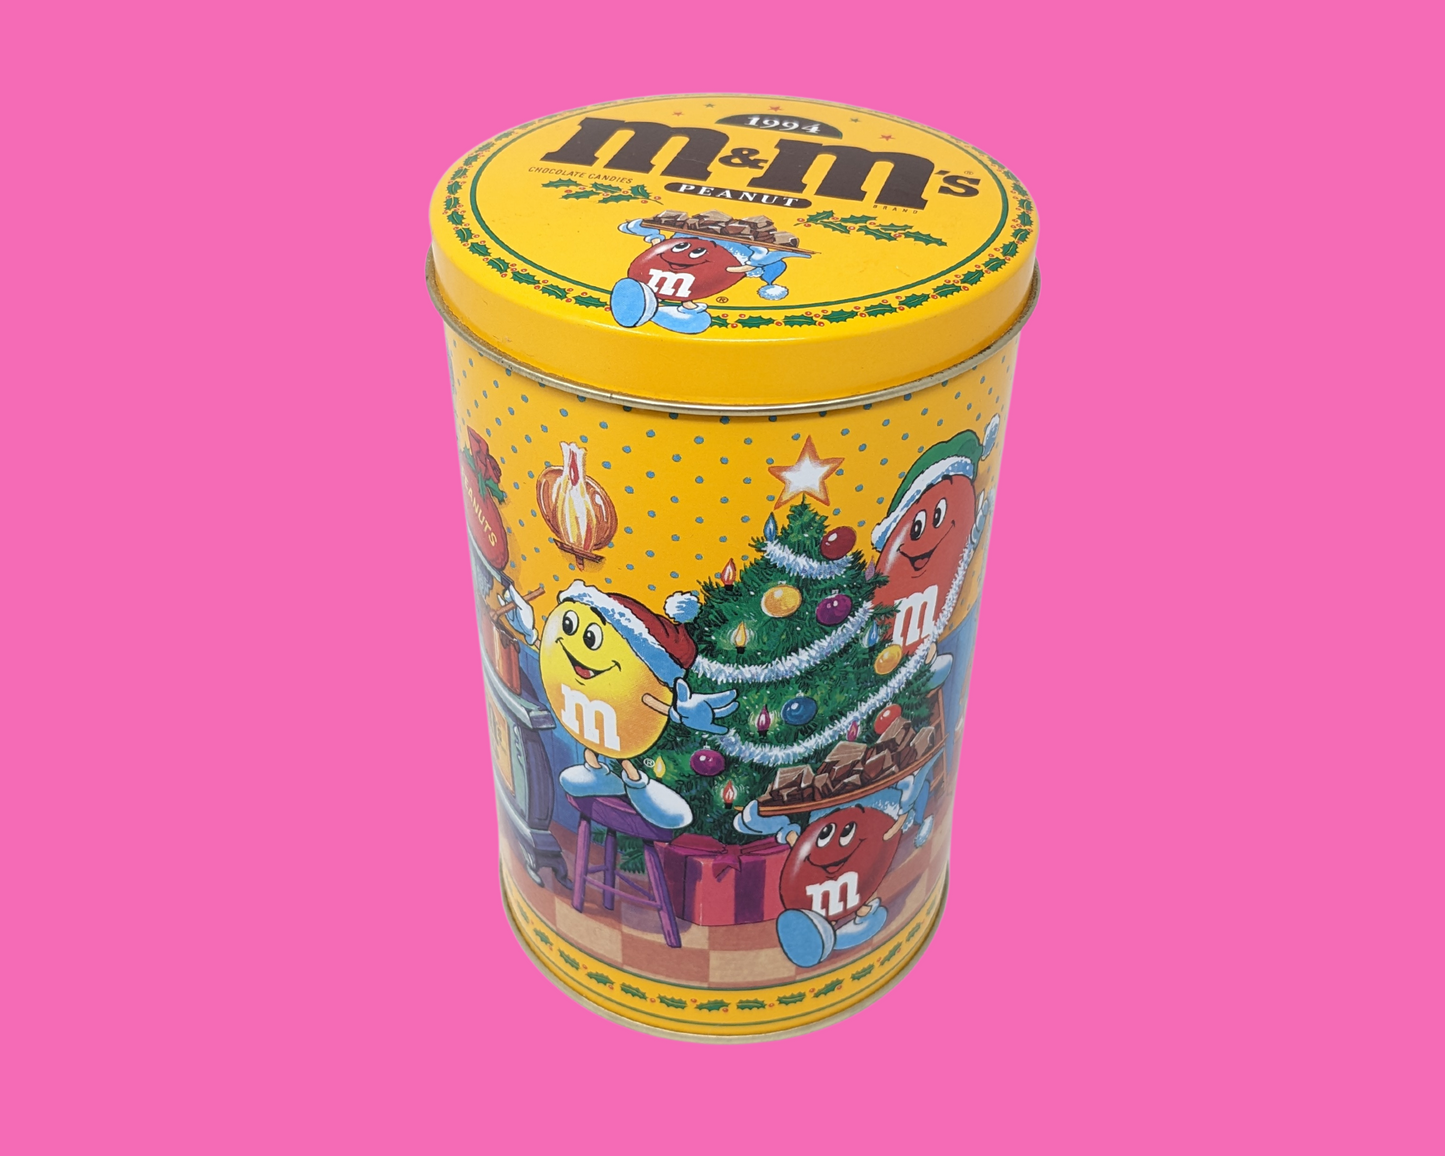 Vintage 1994 Peanut M&M's Chocolate, Christmas, Tin Box